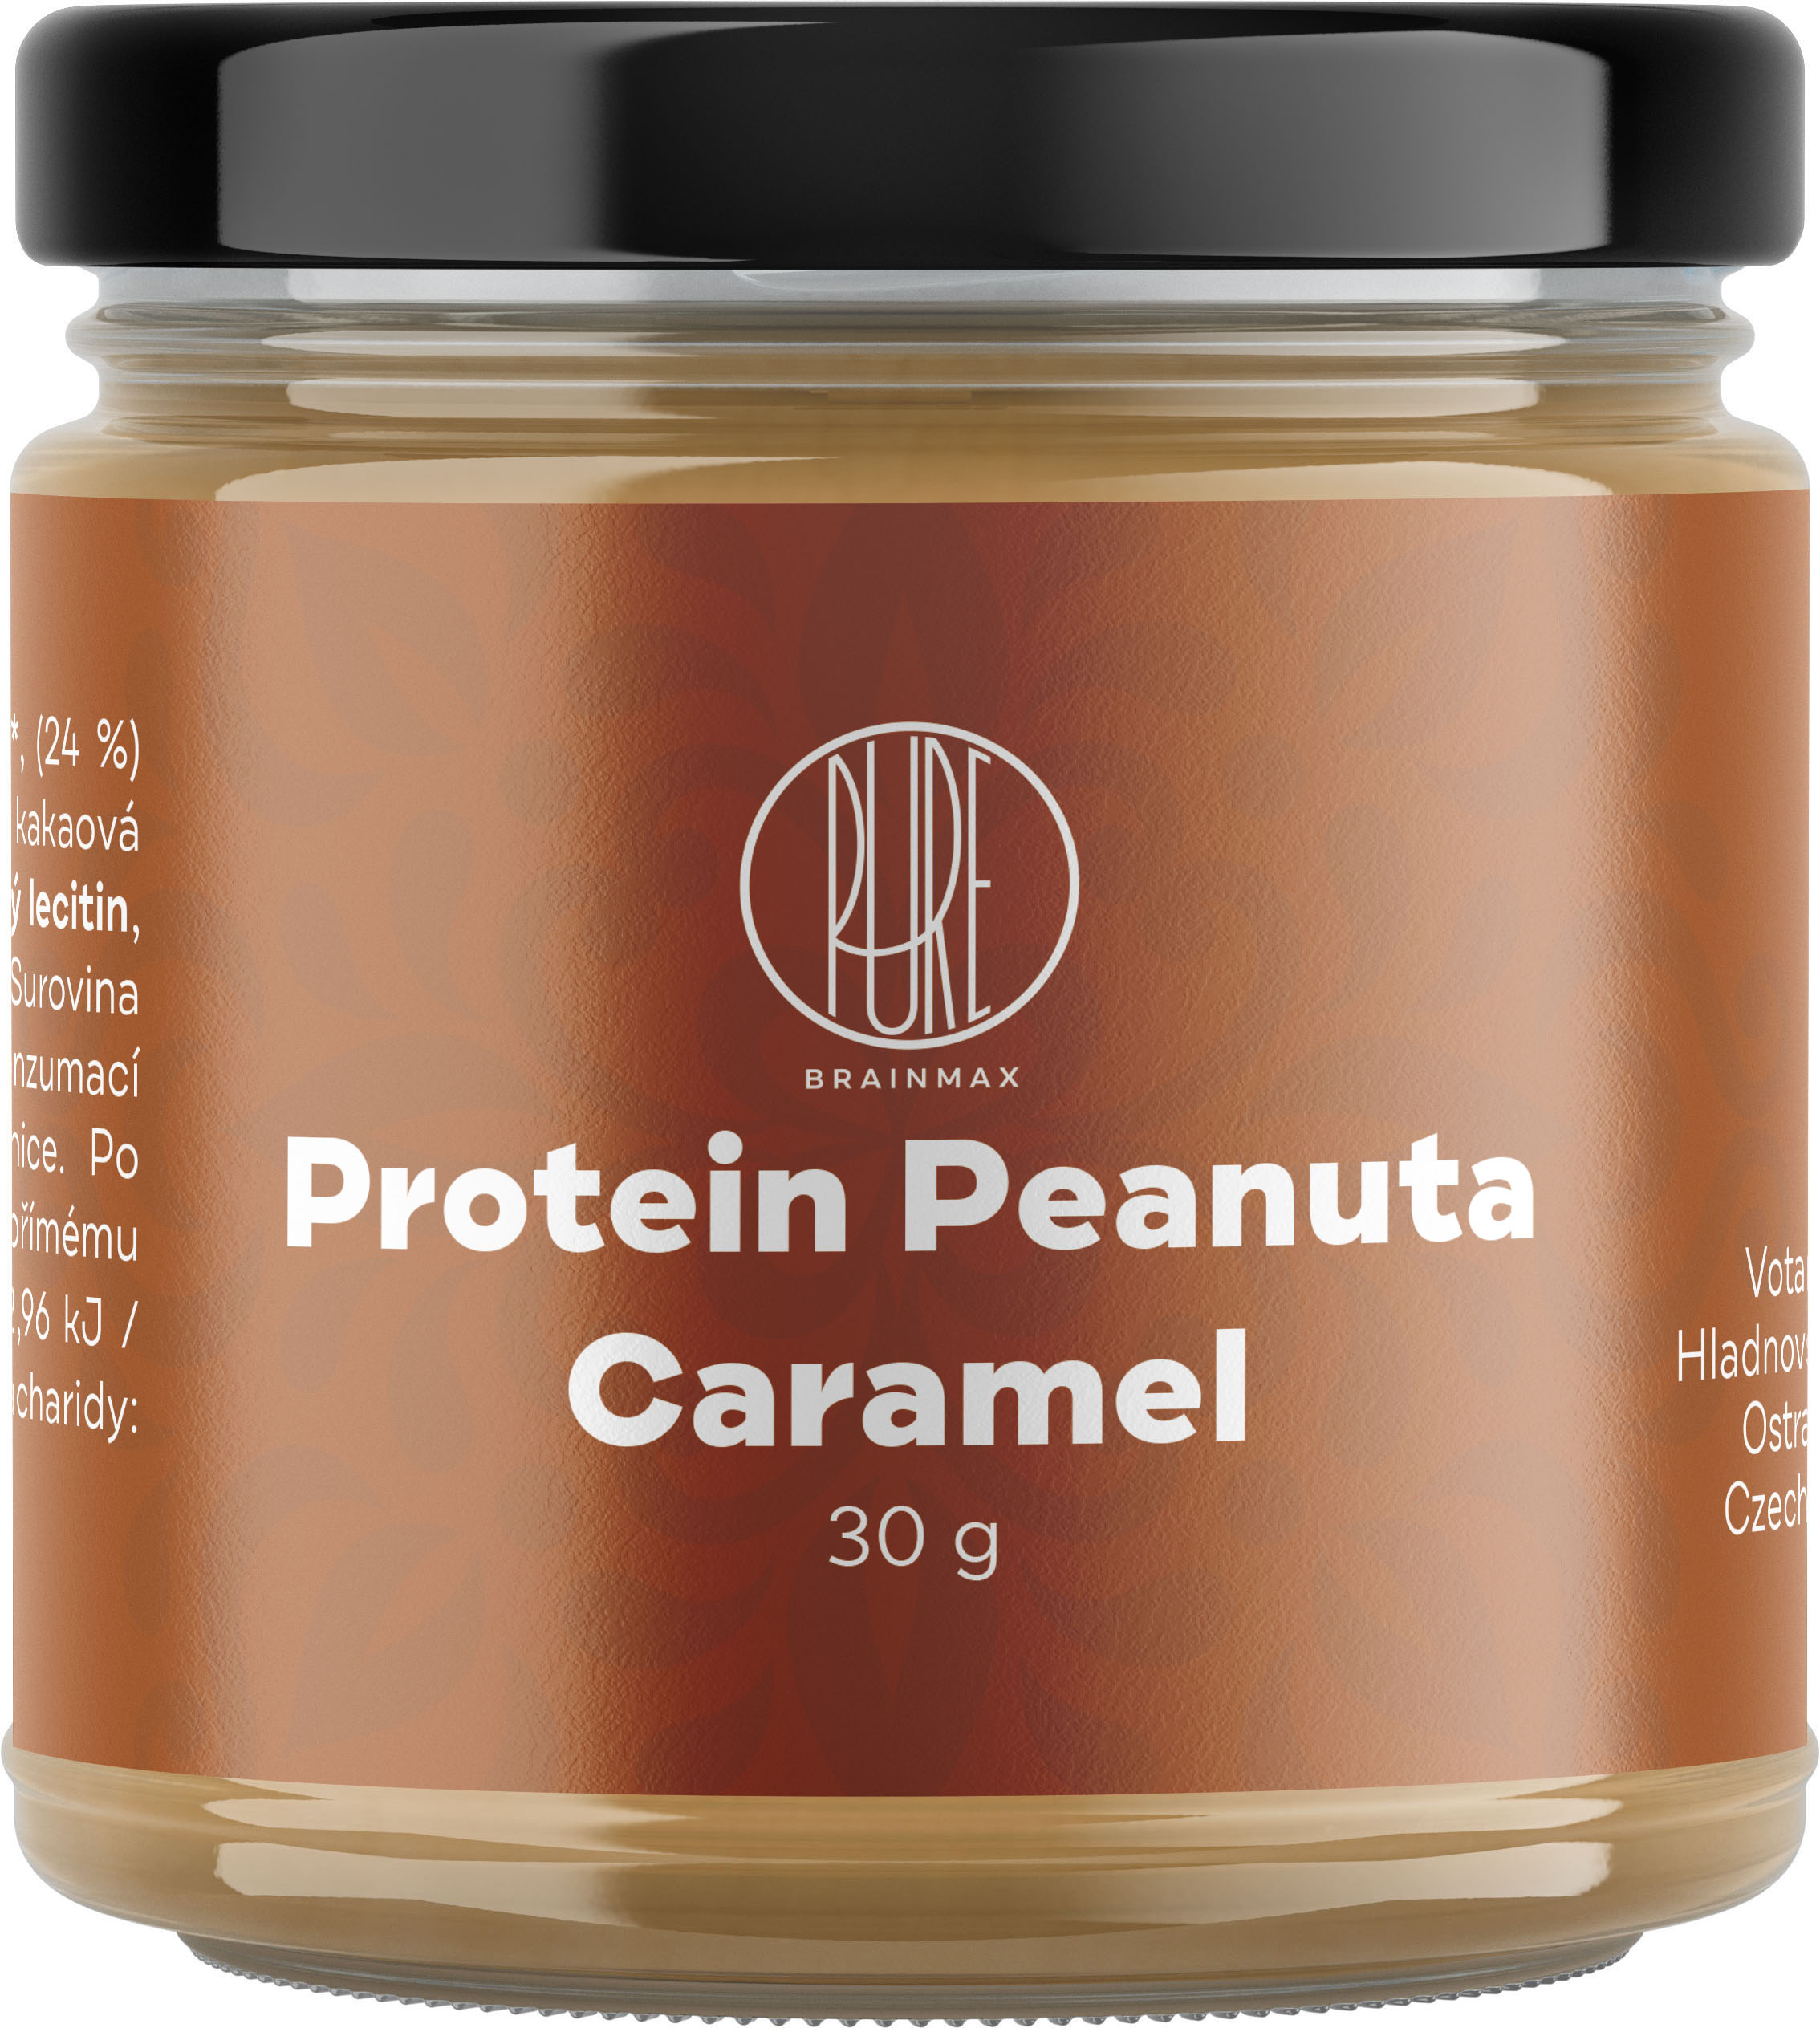 BrainMax Pure Protein Peanuta, Arašídový krém s proteinem a karamelem, 30g